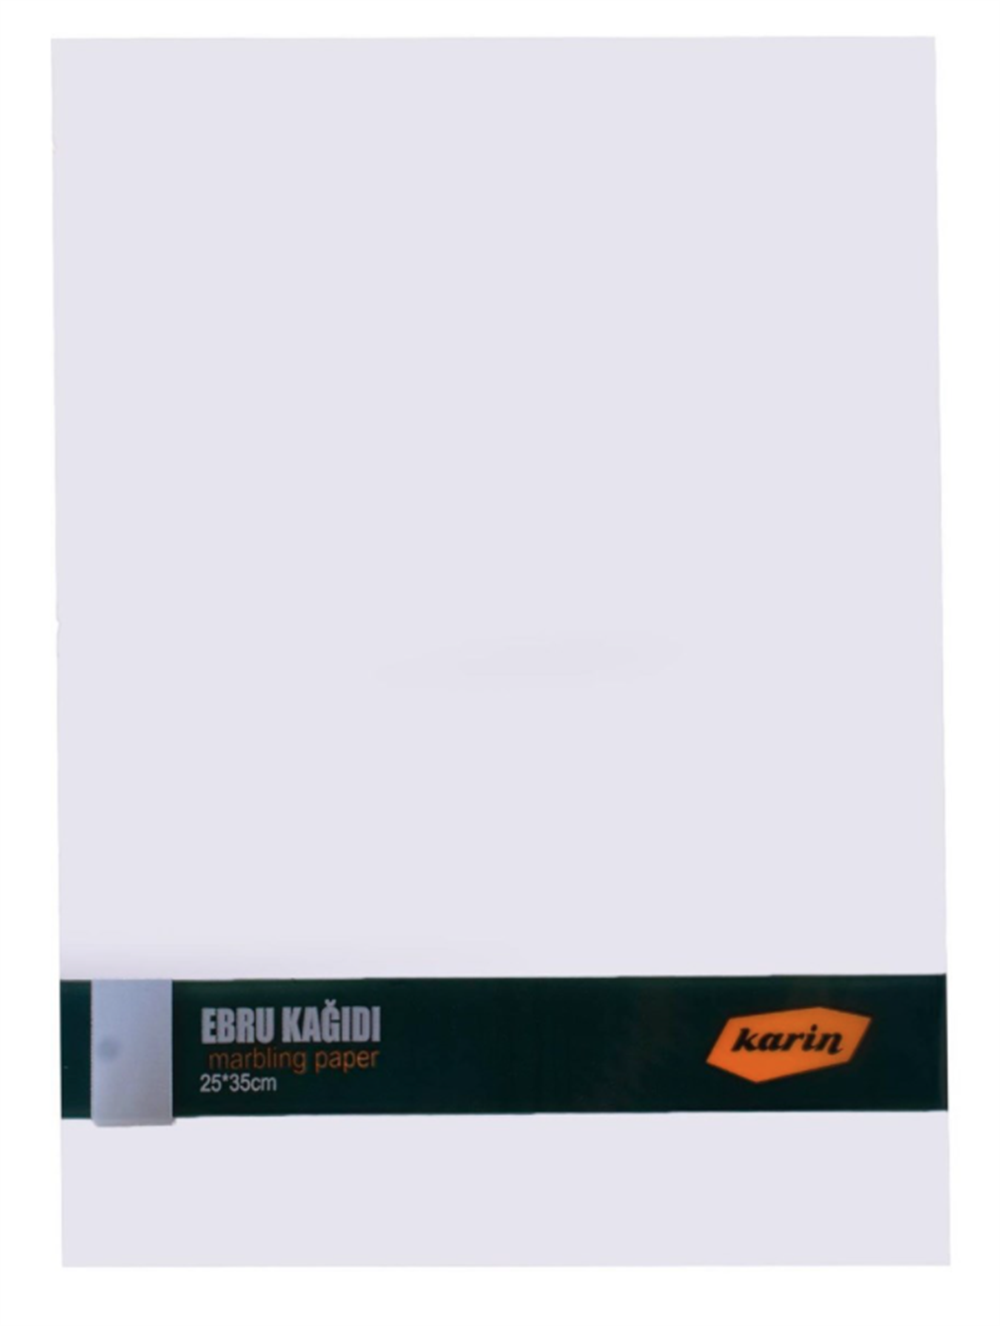 Karin Ebru Kağıdı 25x35 cm Beyaz 90 gr 100 Adet